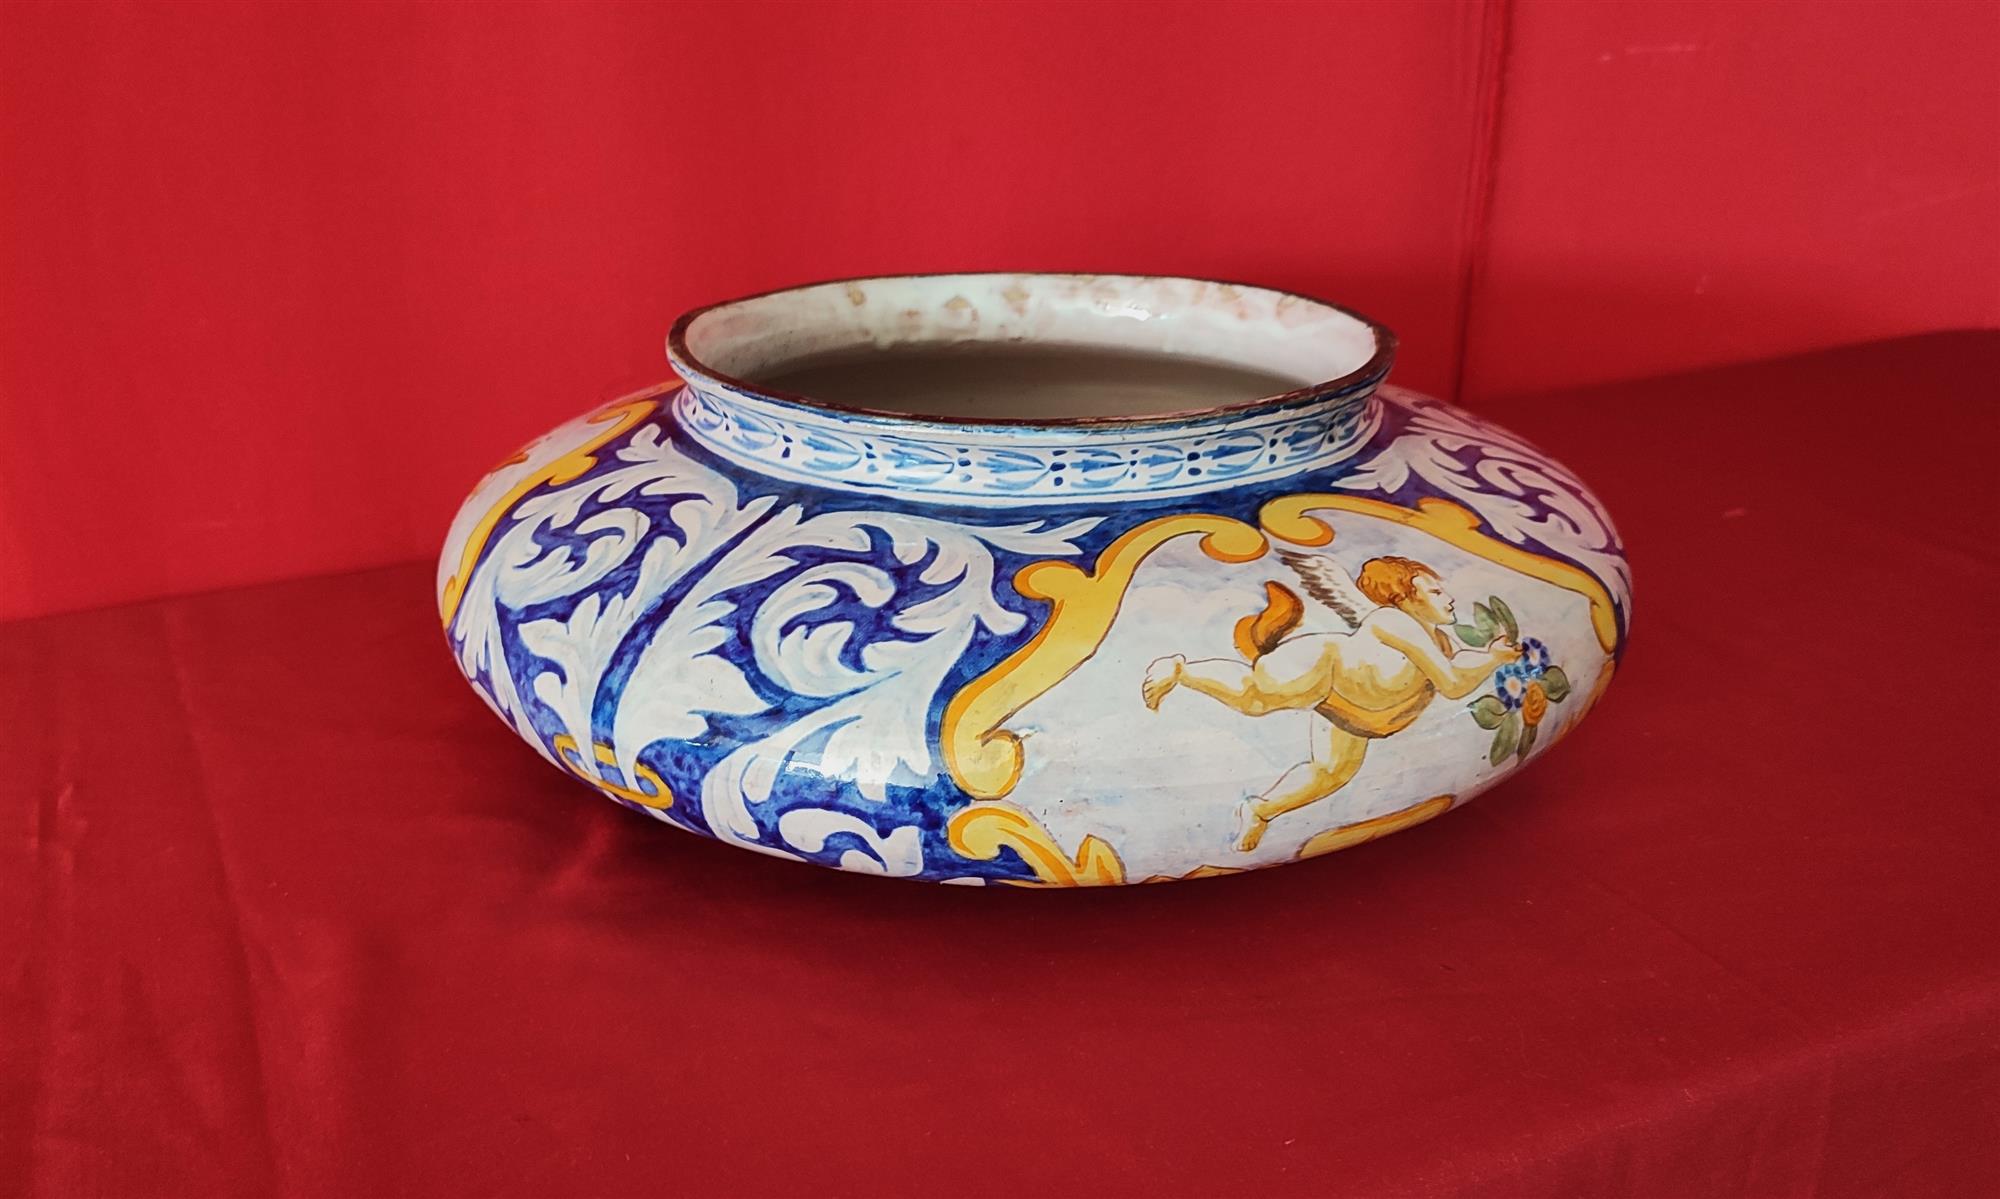 Hand-painted majolica cachepot